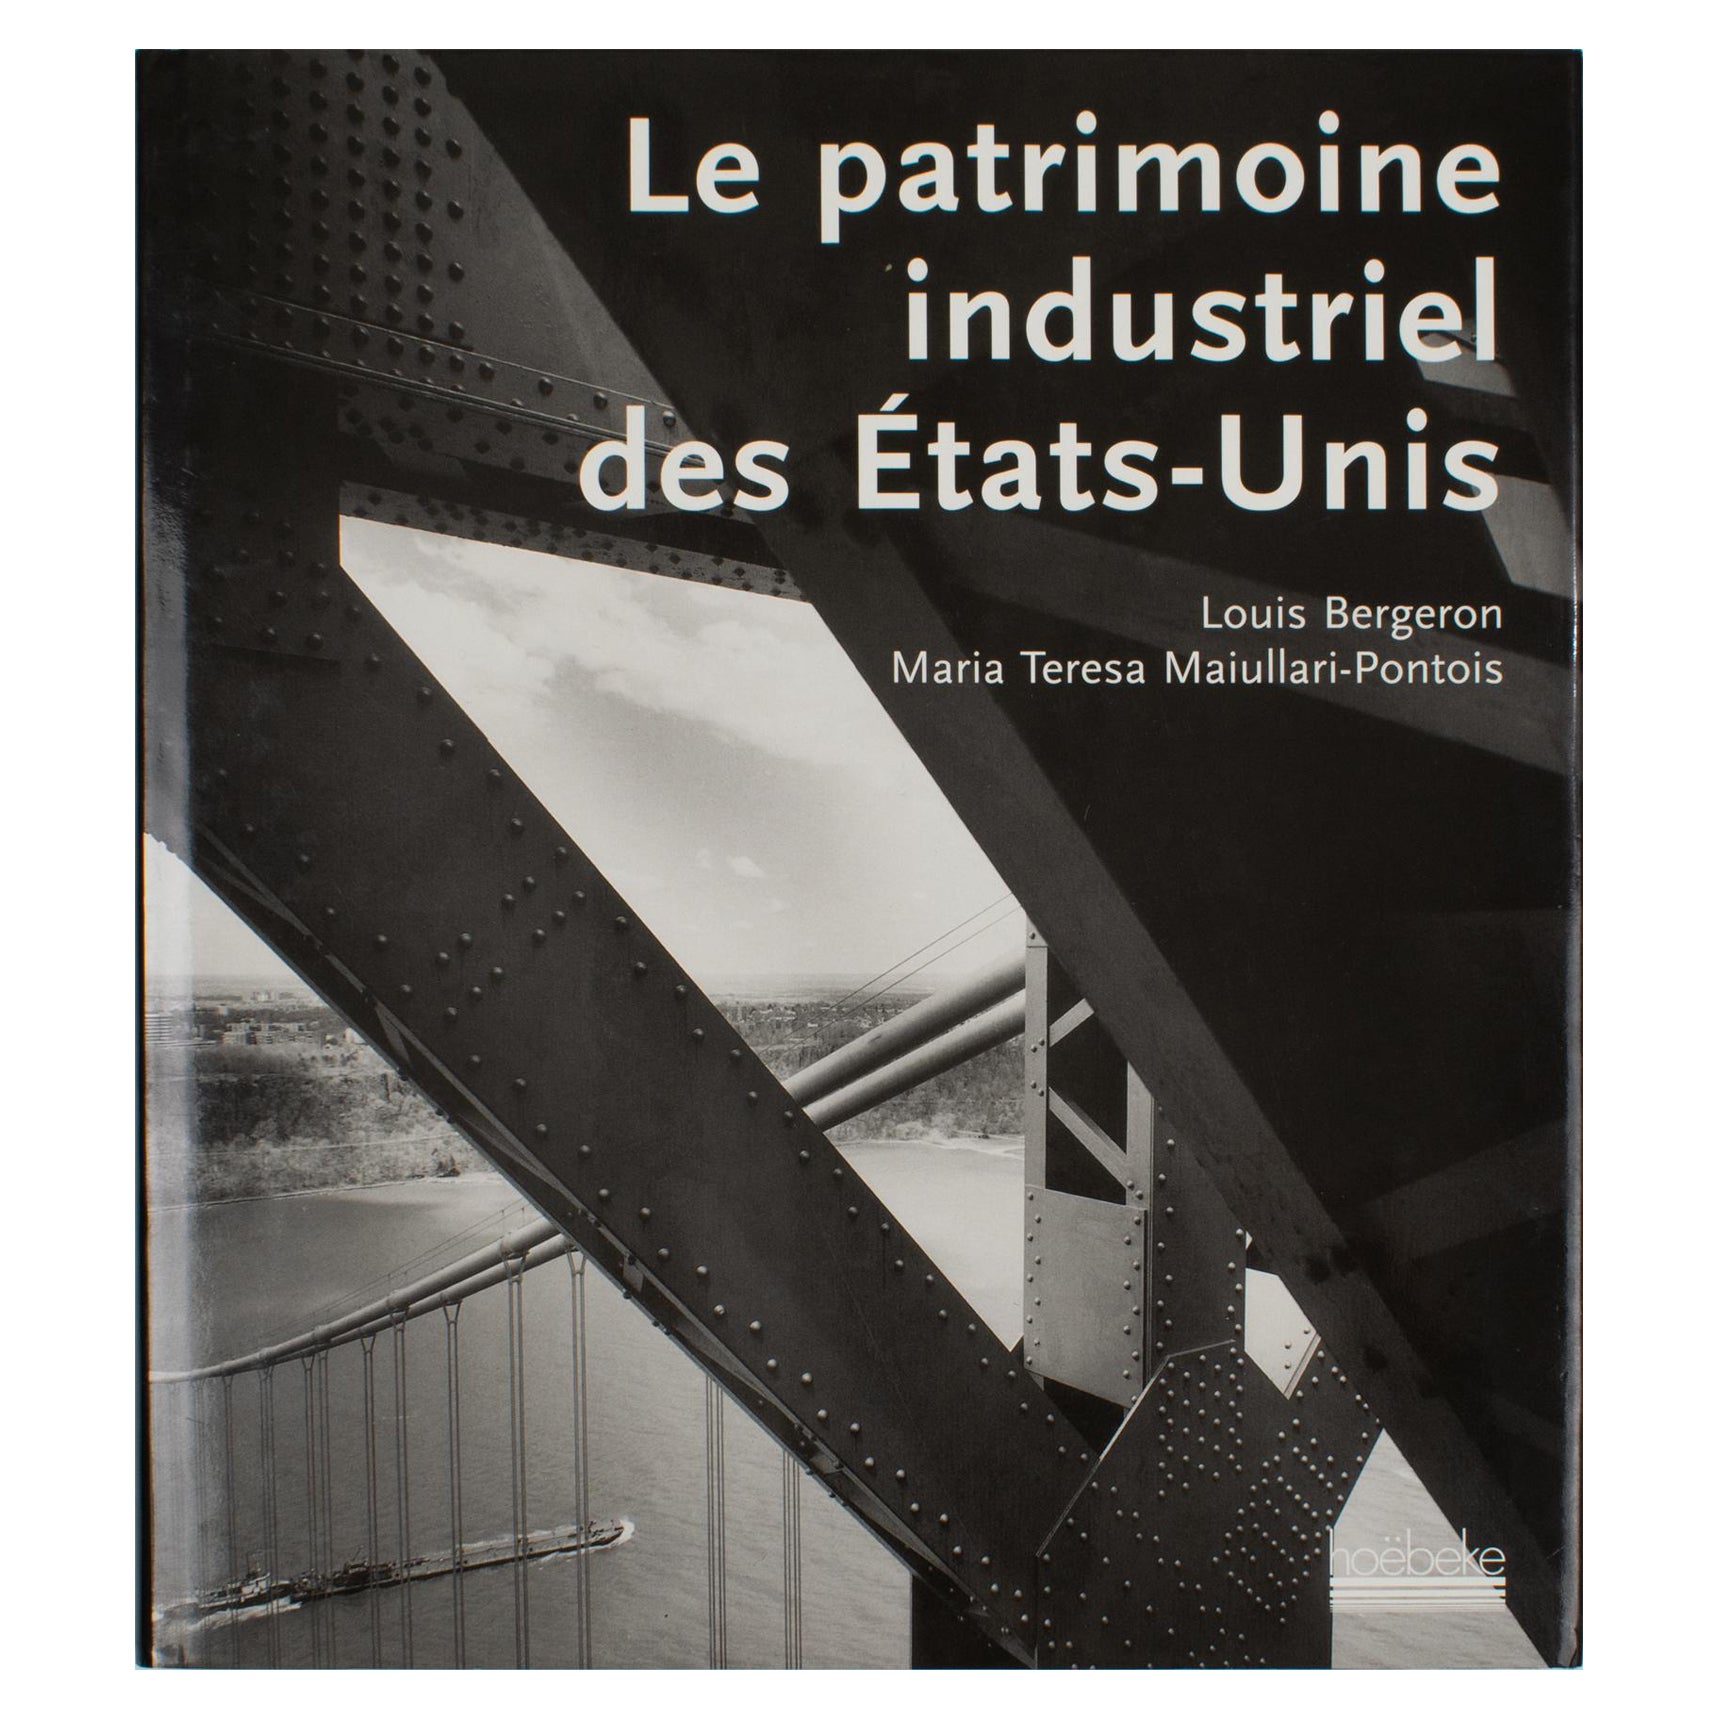 Le patrimoine industriel des États-Unis, livre français de Louis Bergeron 2000